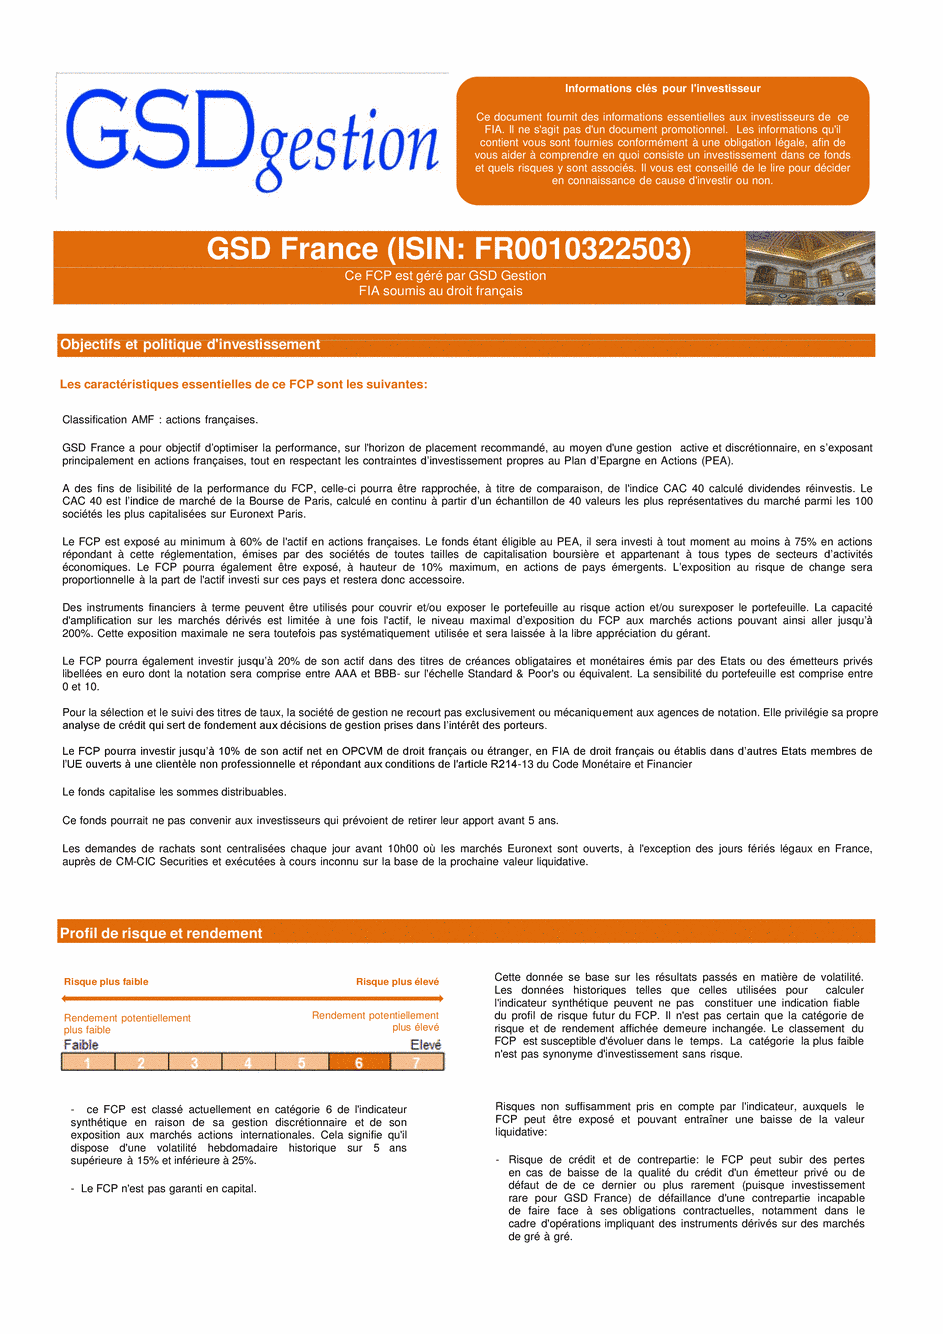 DICI-Prospectus Complet GSD France - 10/03/2015 - Français